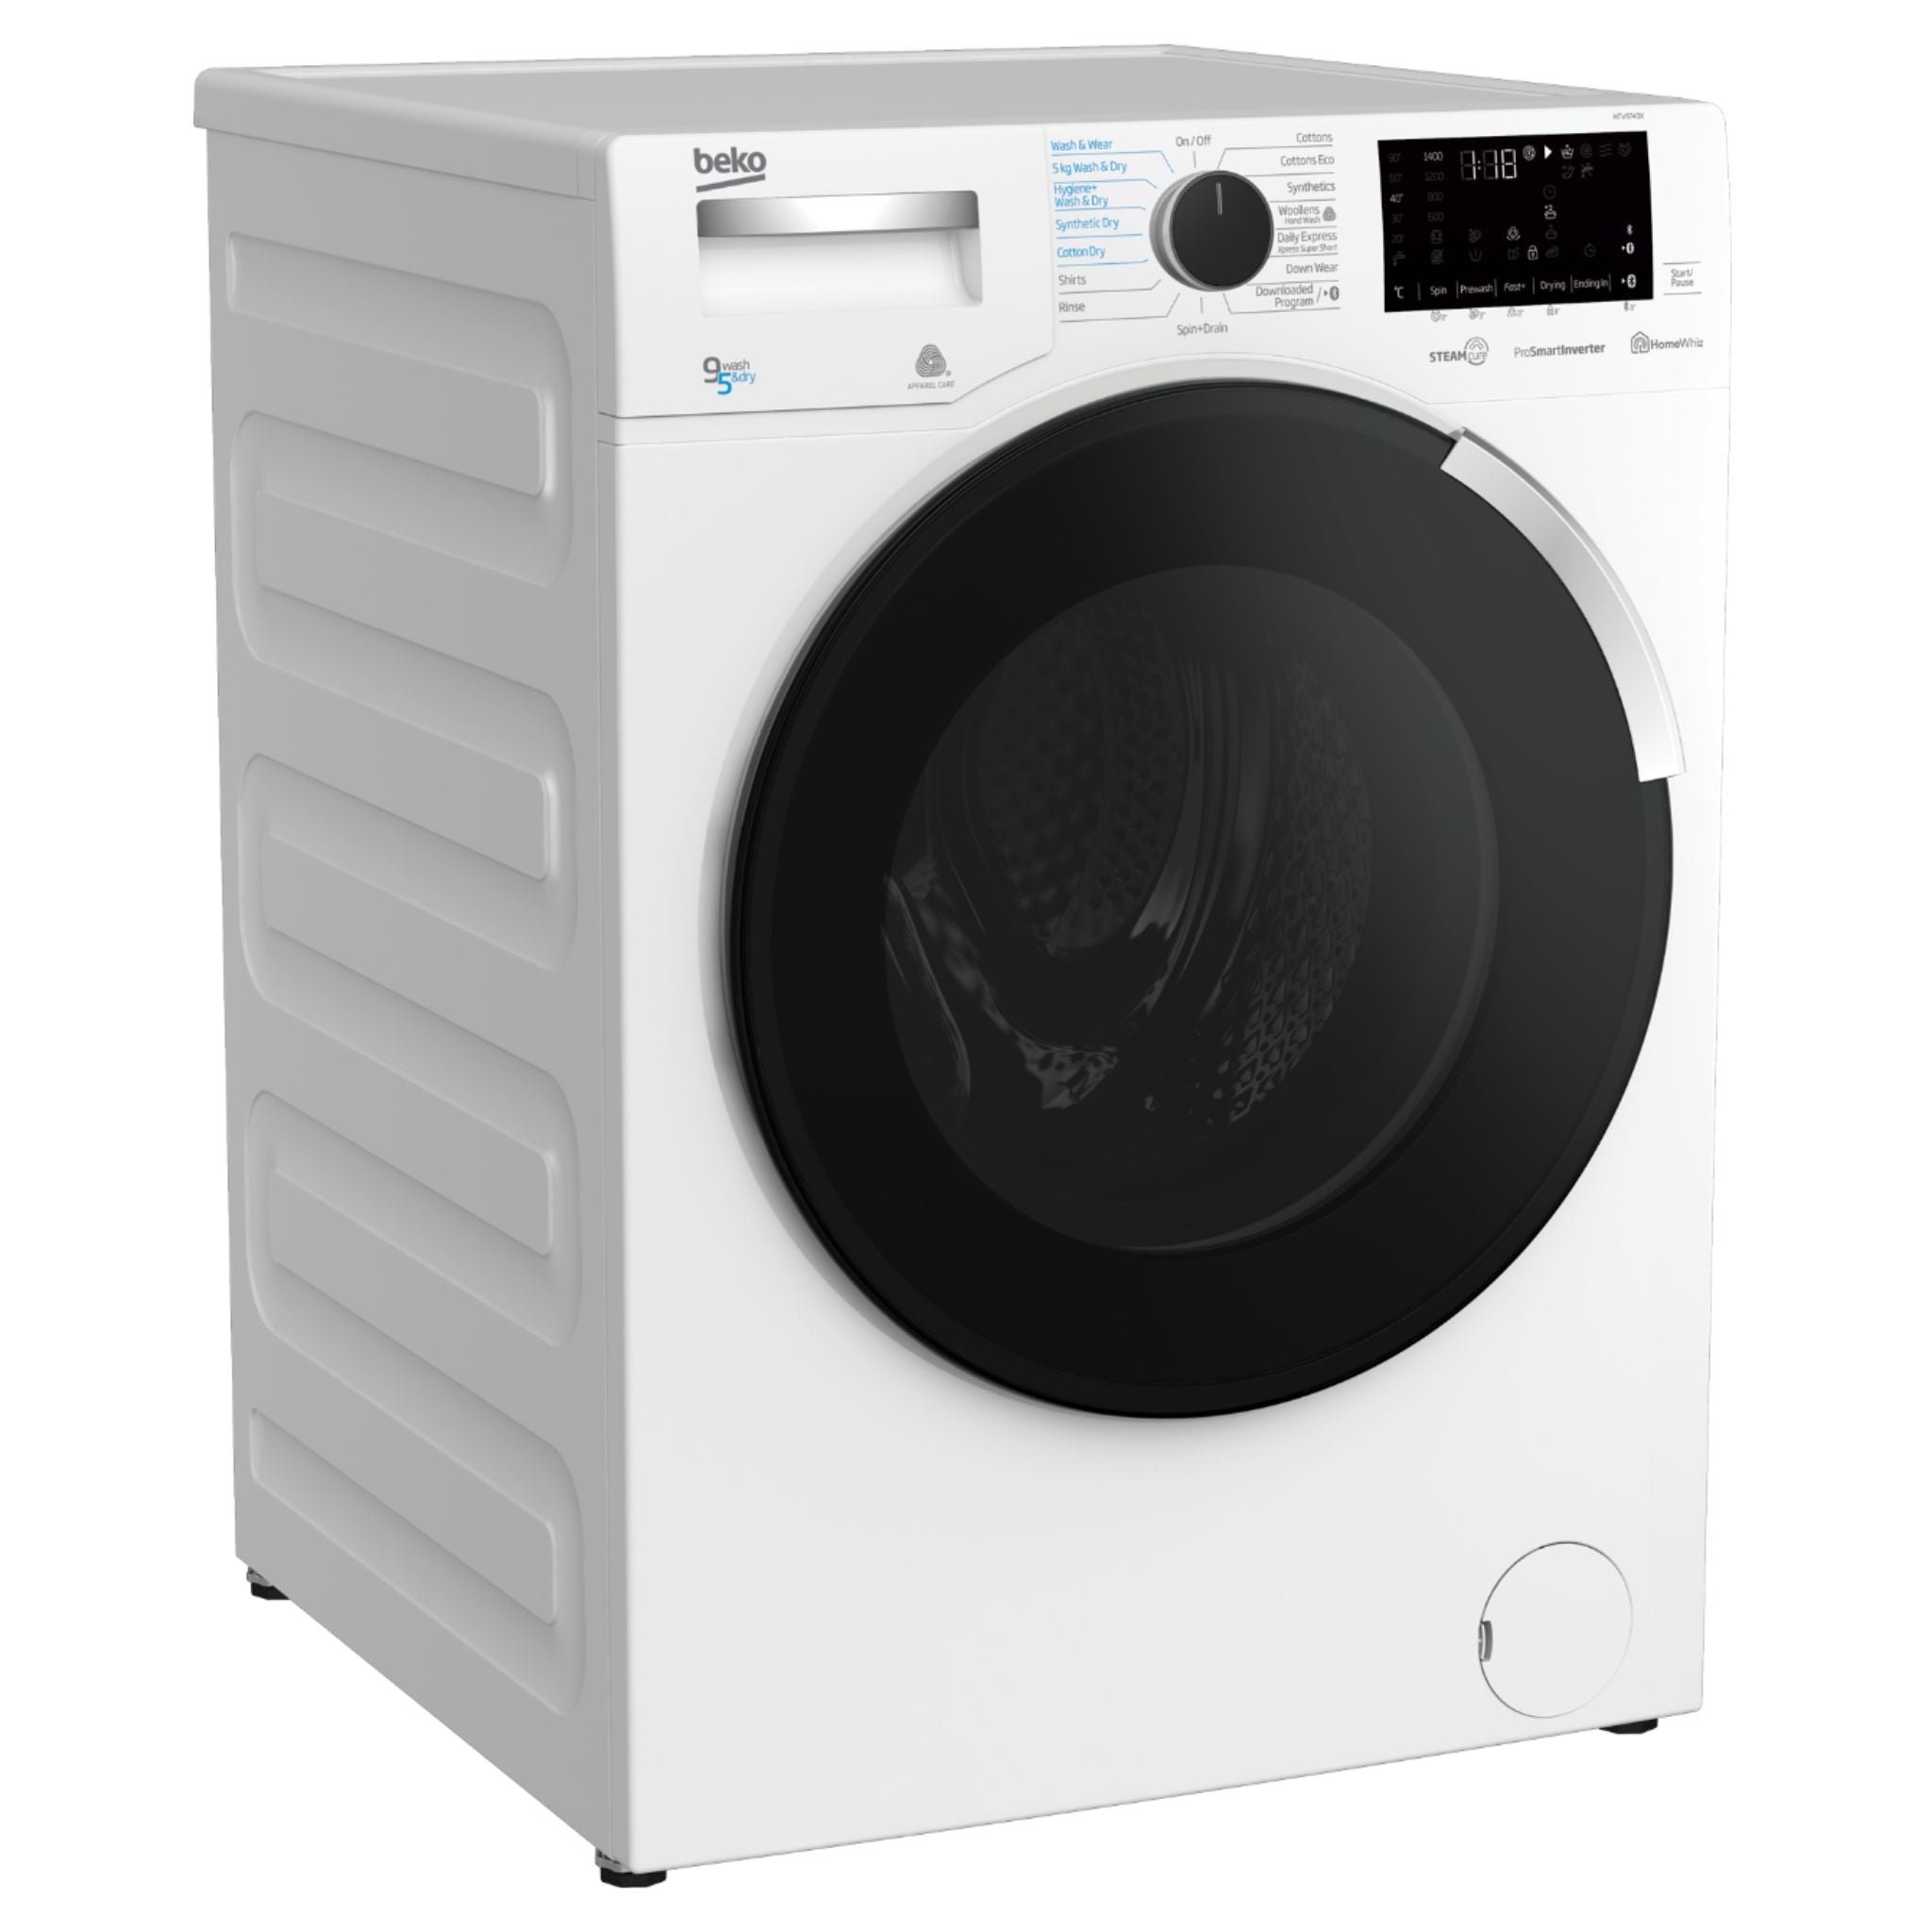 BEKO HTV9743X 9.0 kg. Washer/5.0 kg. Dryer Front Load Washing Machine Beko